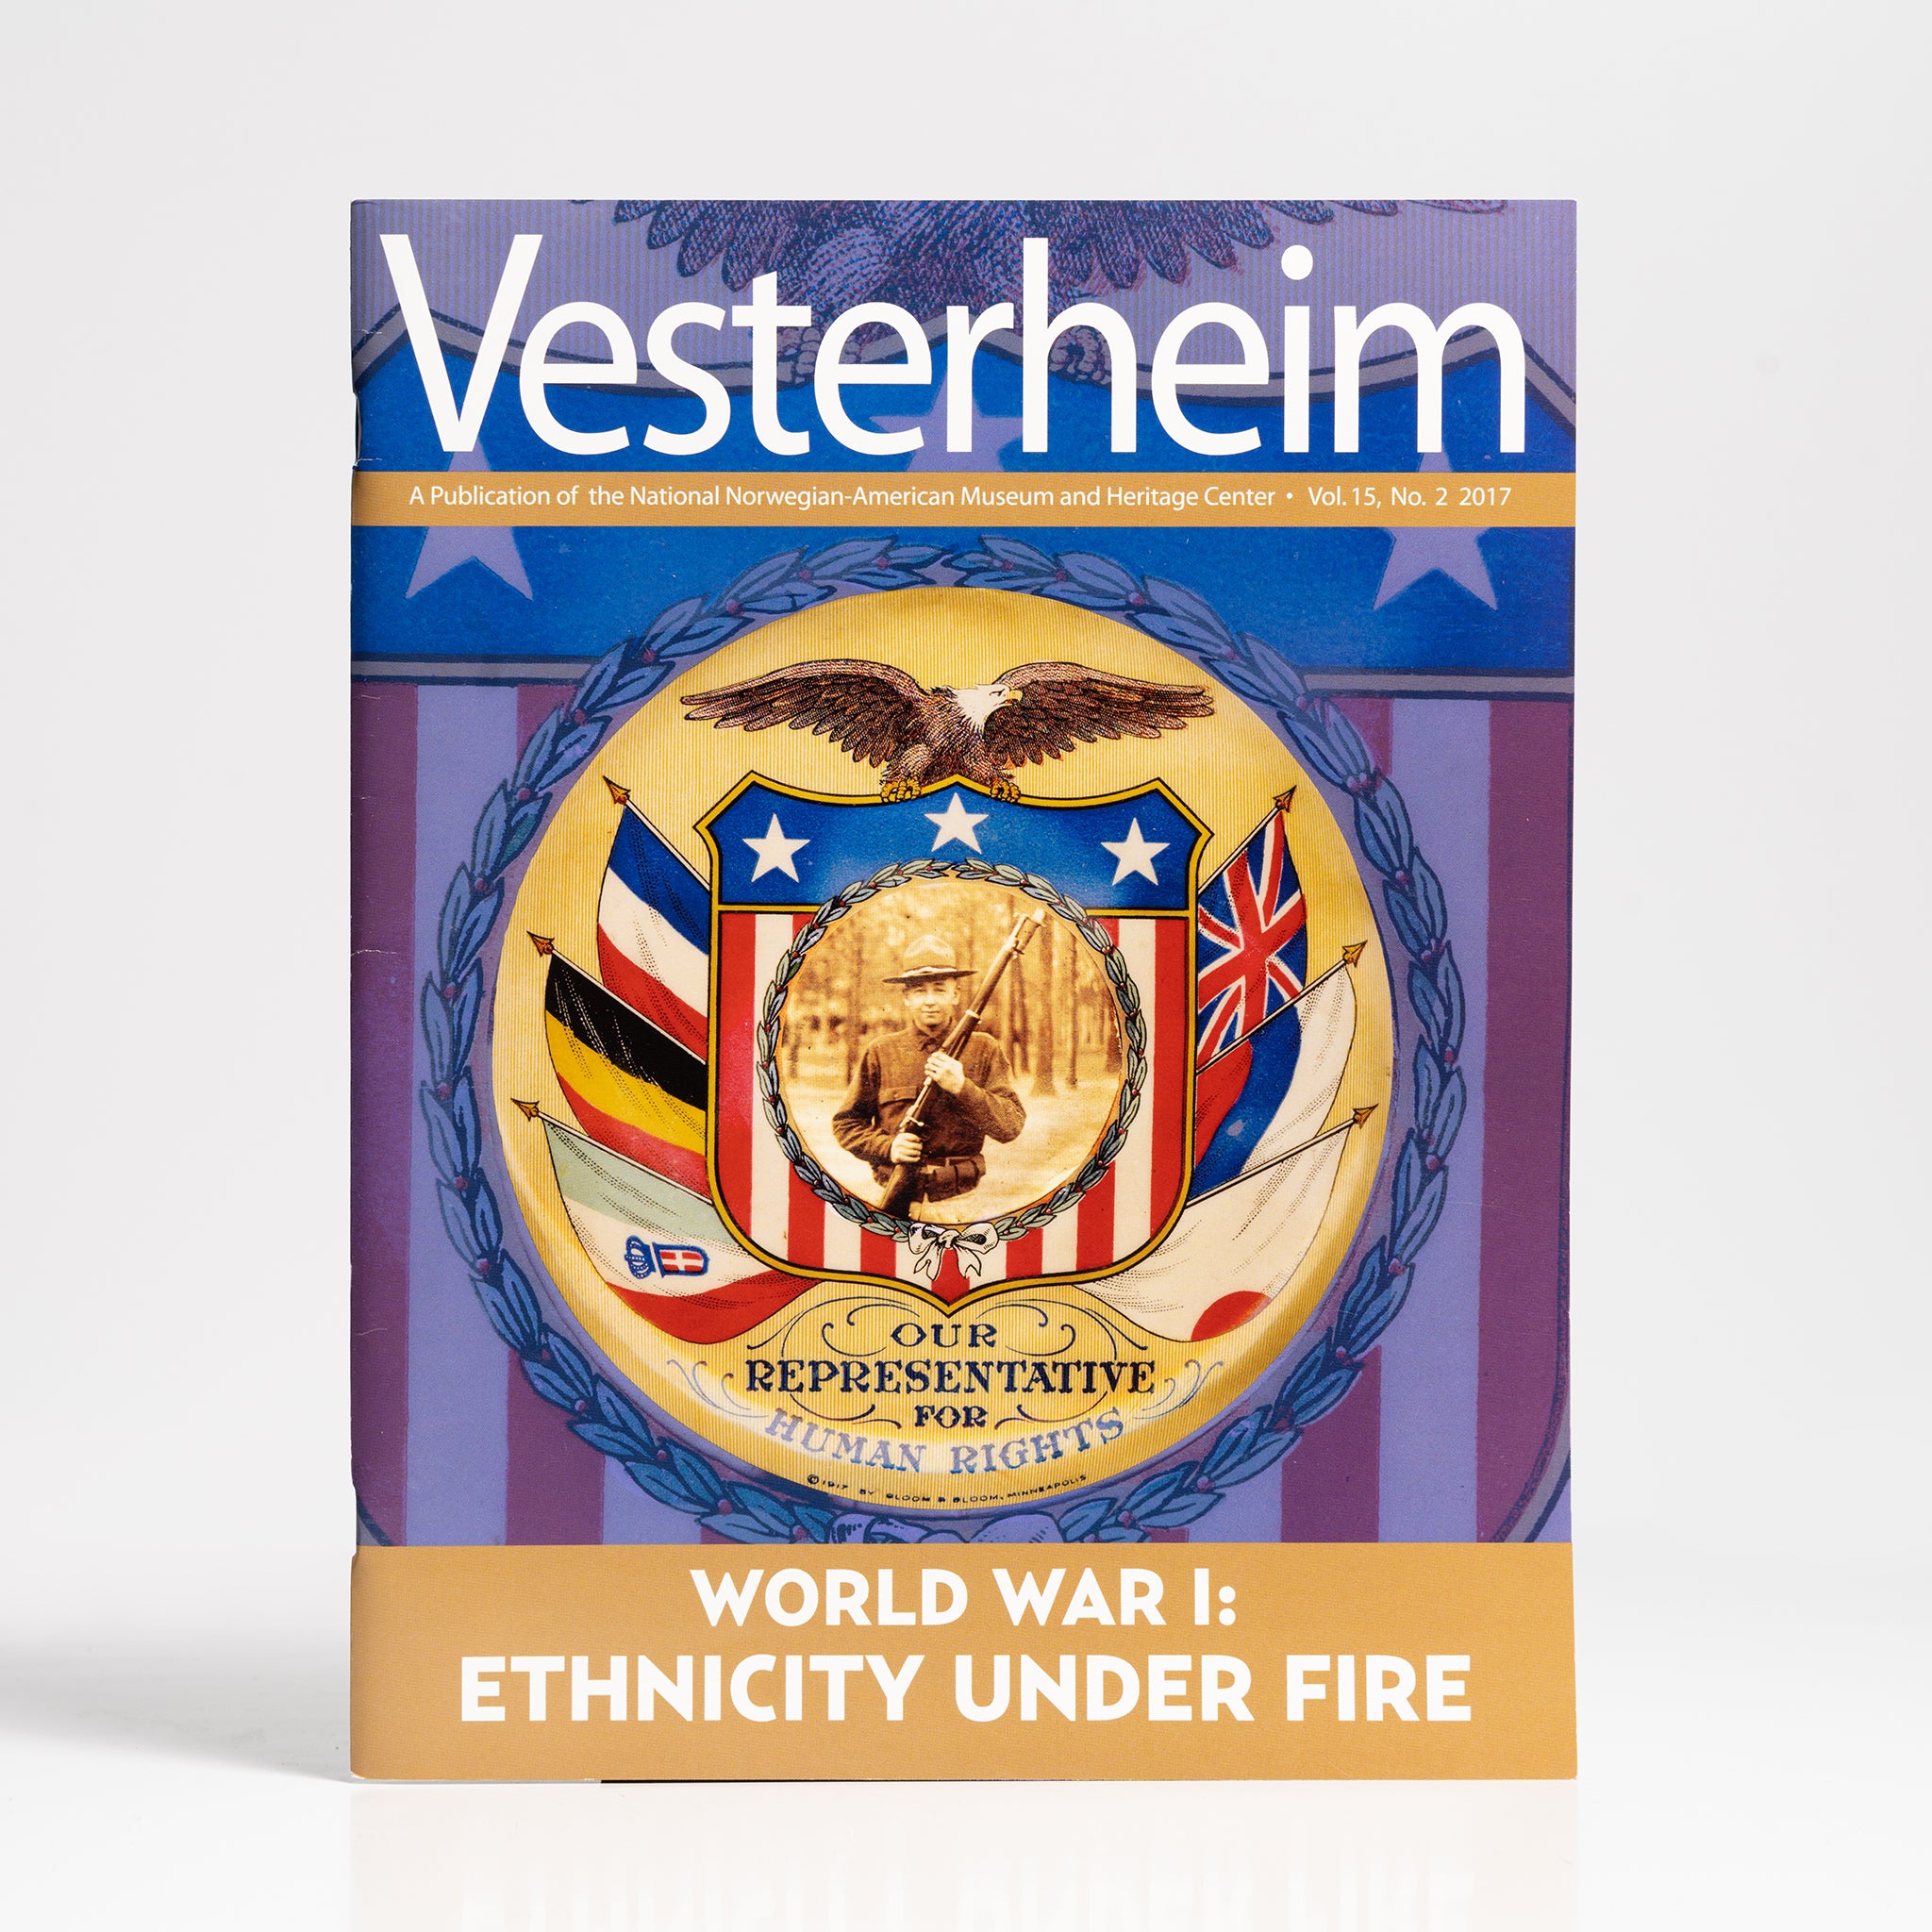 Vesterheim Magazine Vol. 15, No. 2 2017 - World War I: Ethnicity Under Fire